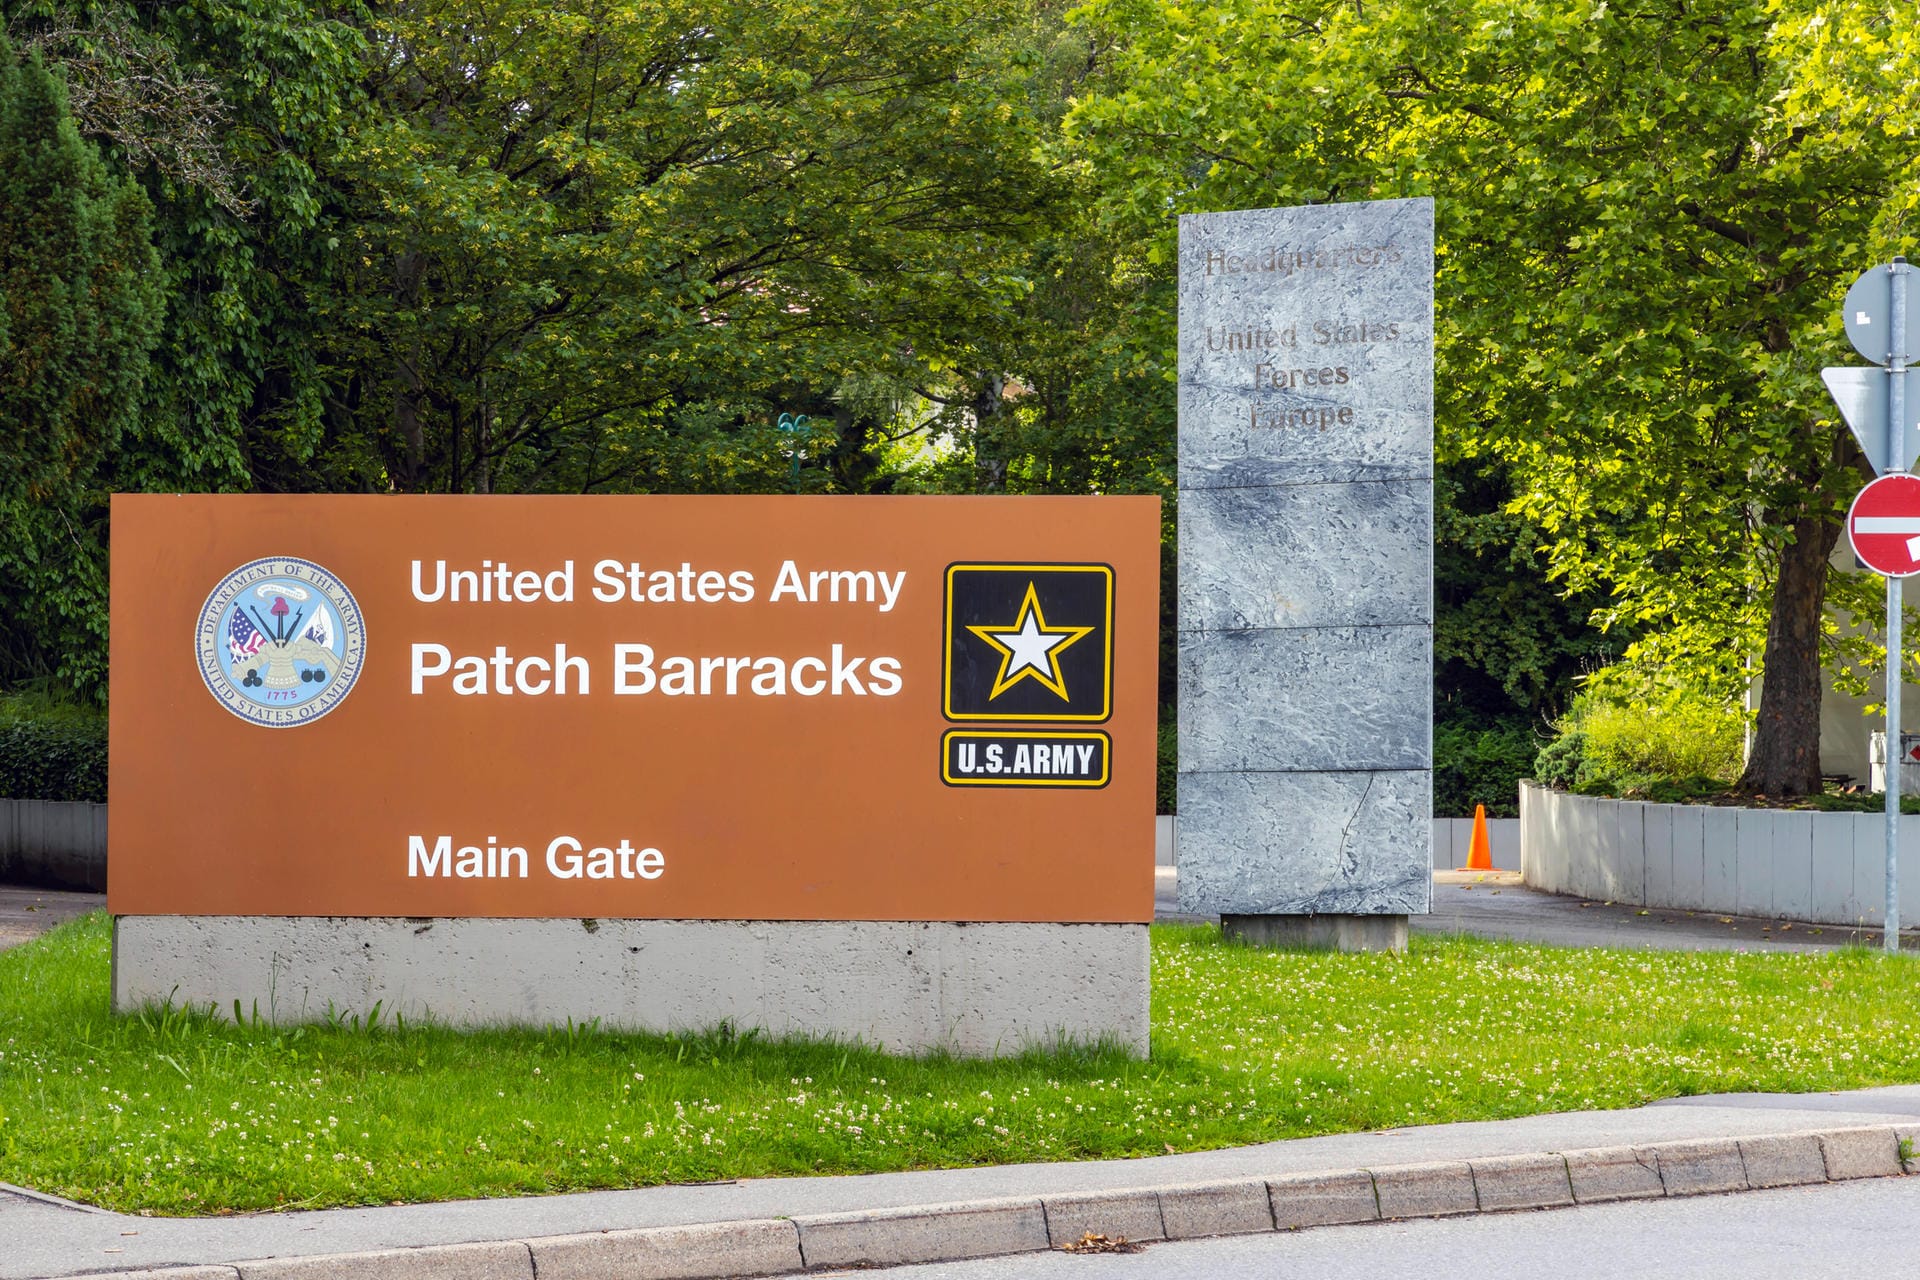 ... in den dortigen Patch Barracks soll dann nicht mehr die Kommandozentrale der US-Truppen in Europa untergebraucht sein.